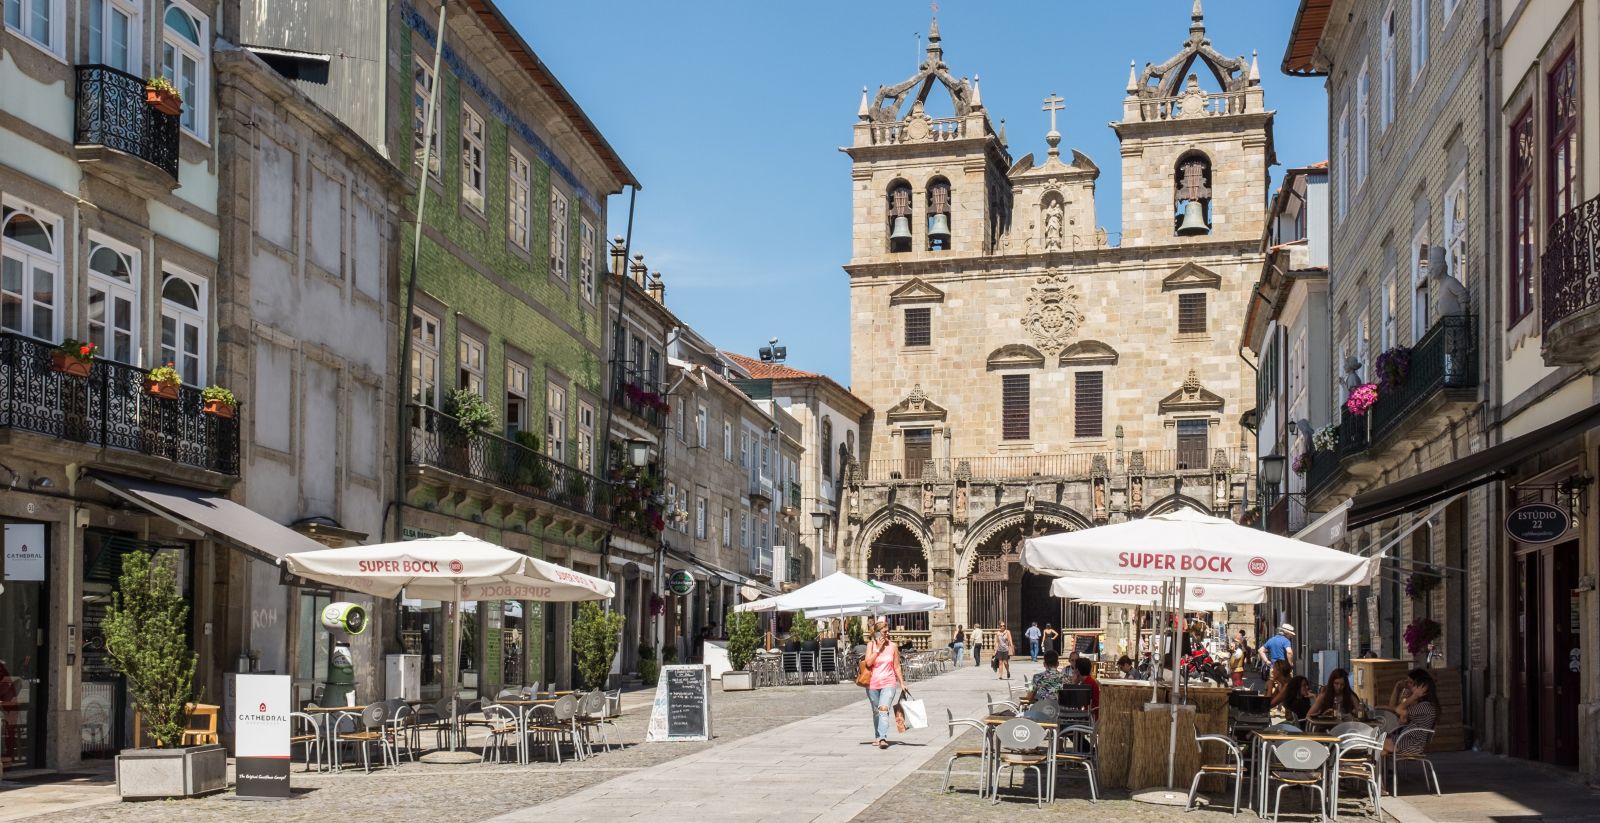 City centre of Braga.